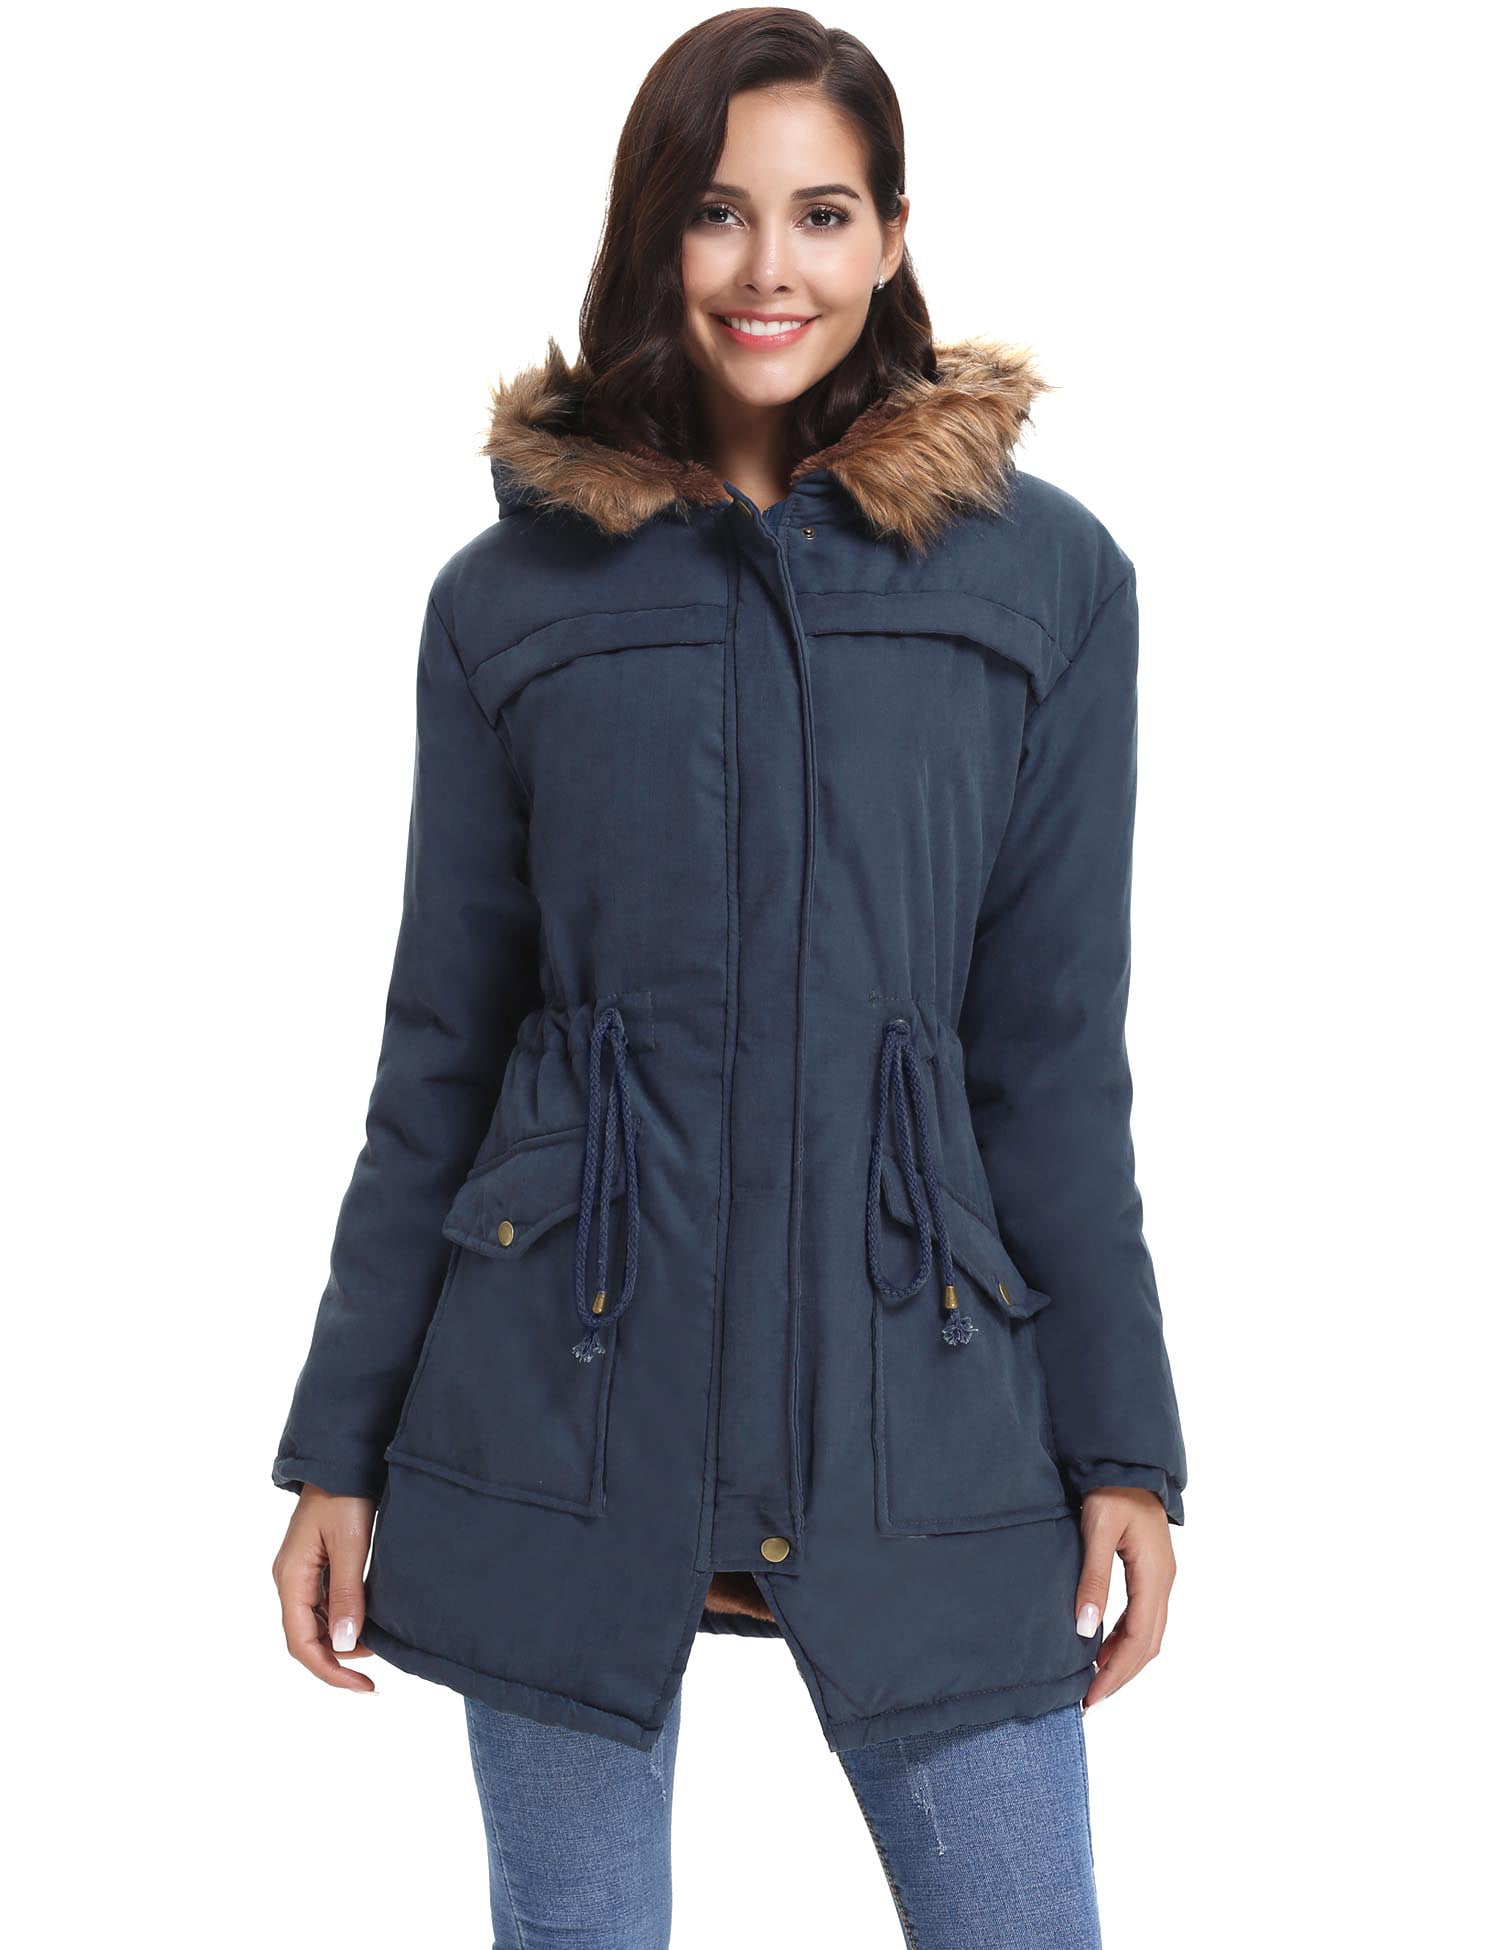 Womens Plus Size Hooded Warm Winter Coats Anroaks Long Parka Coats Fleece Outwear Jacket with Faux Fur Lined 